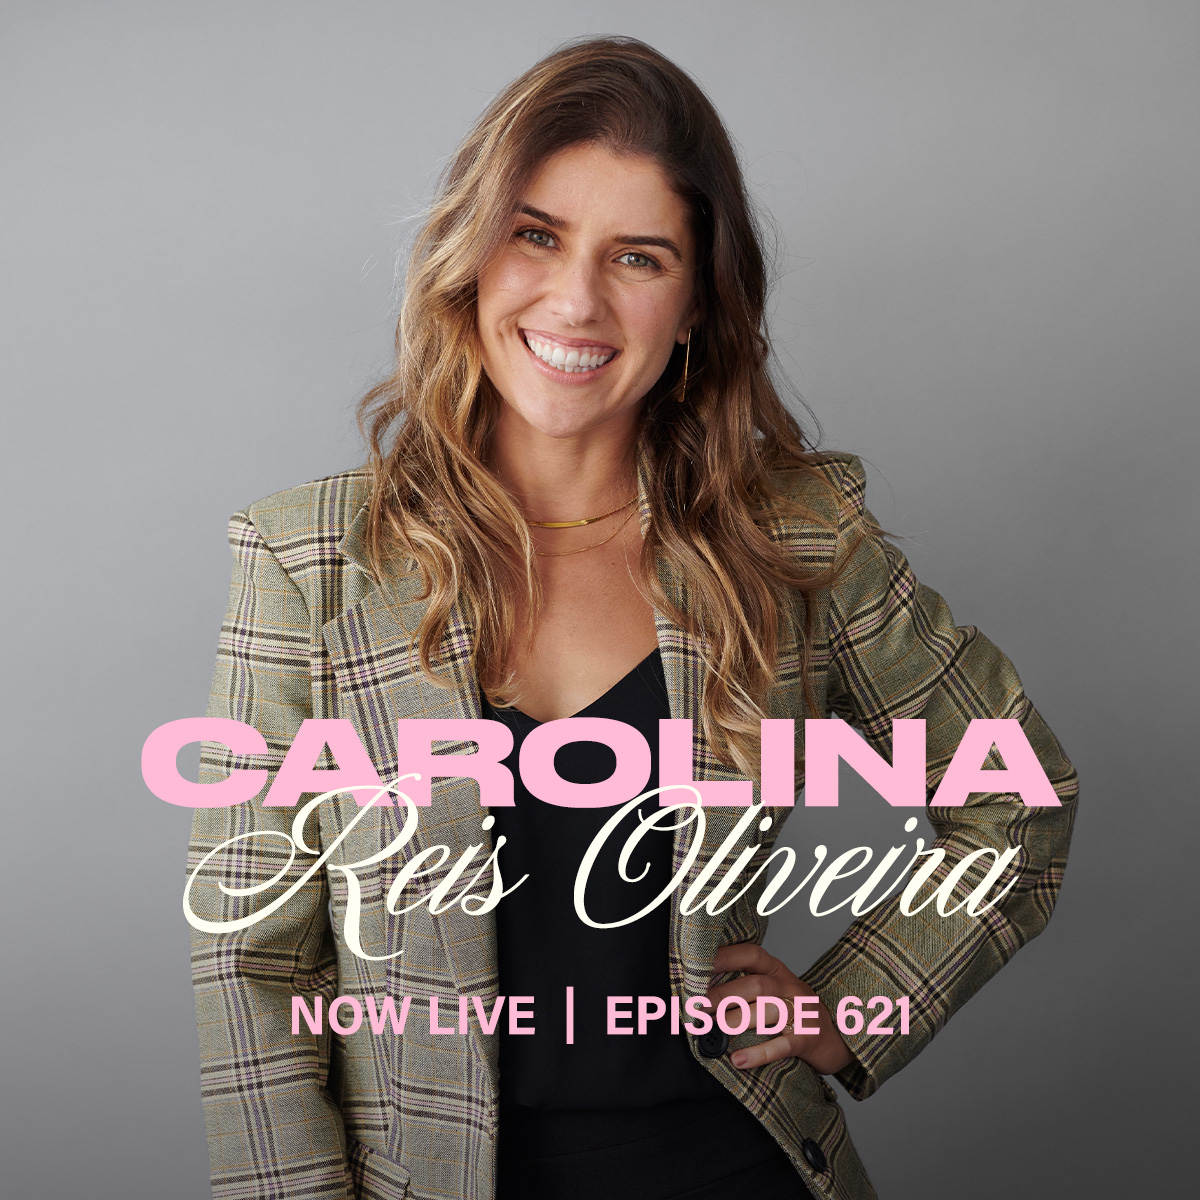 Carolina Reis